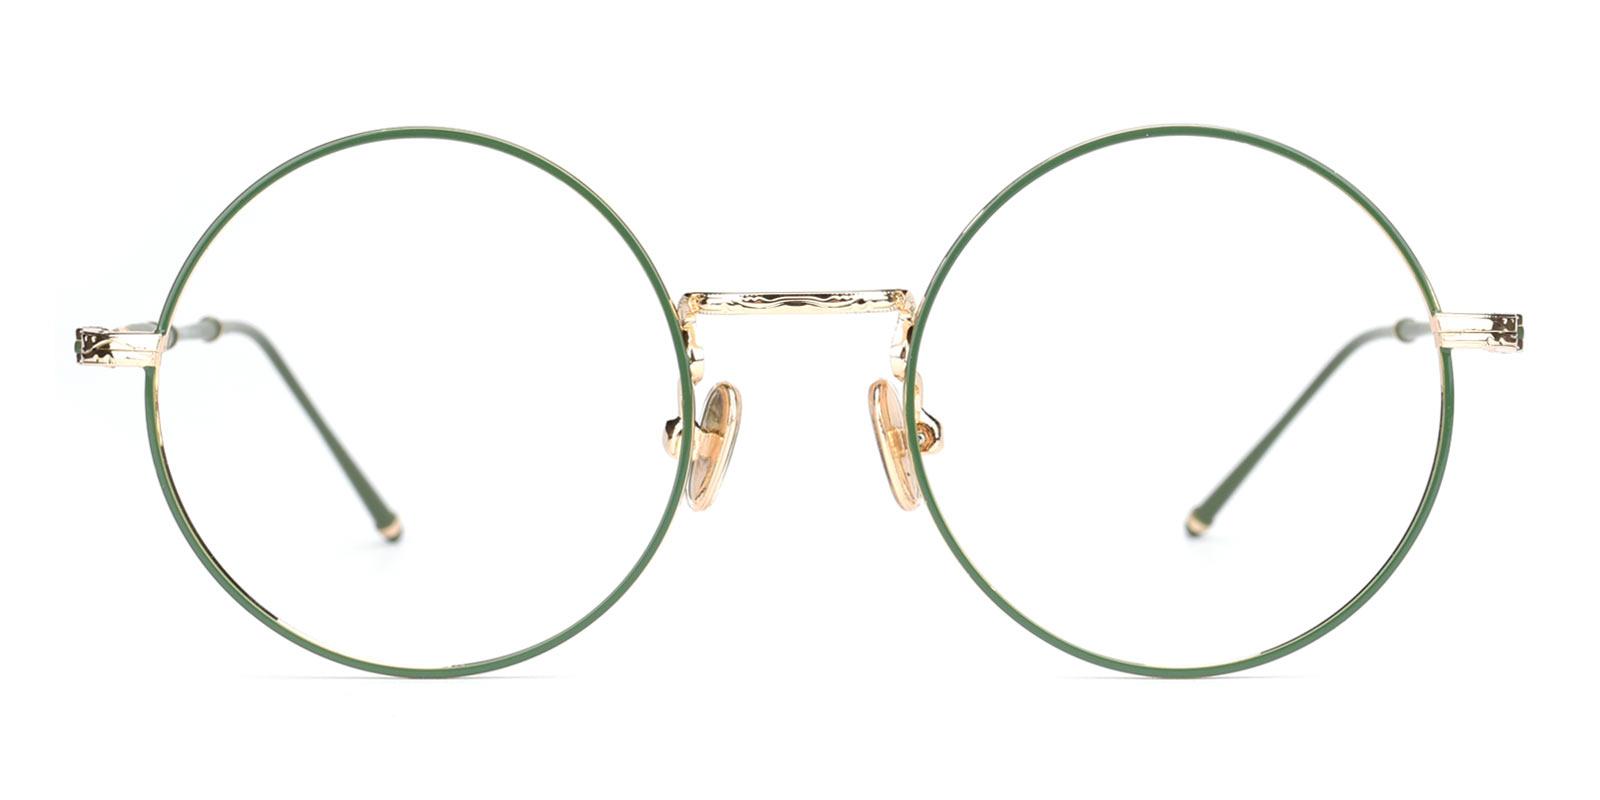 Toto-Green-Round-Metal-Eyeglasses-detail